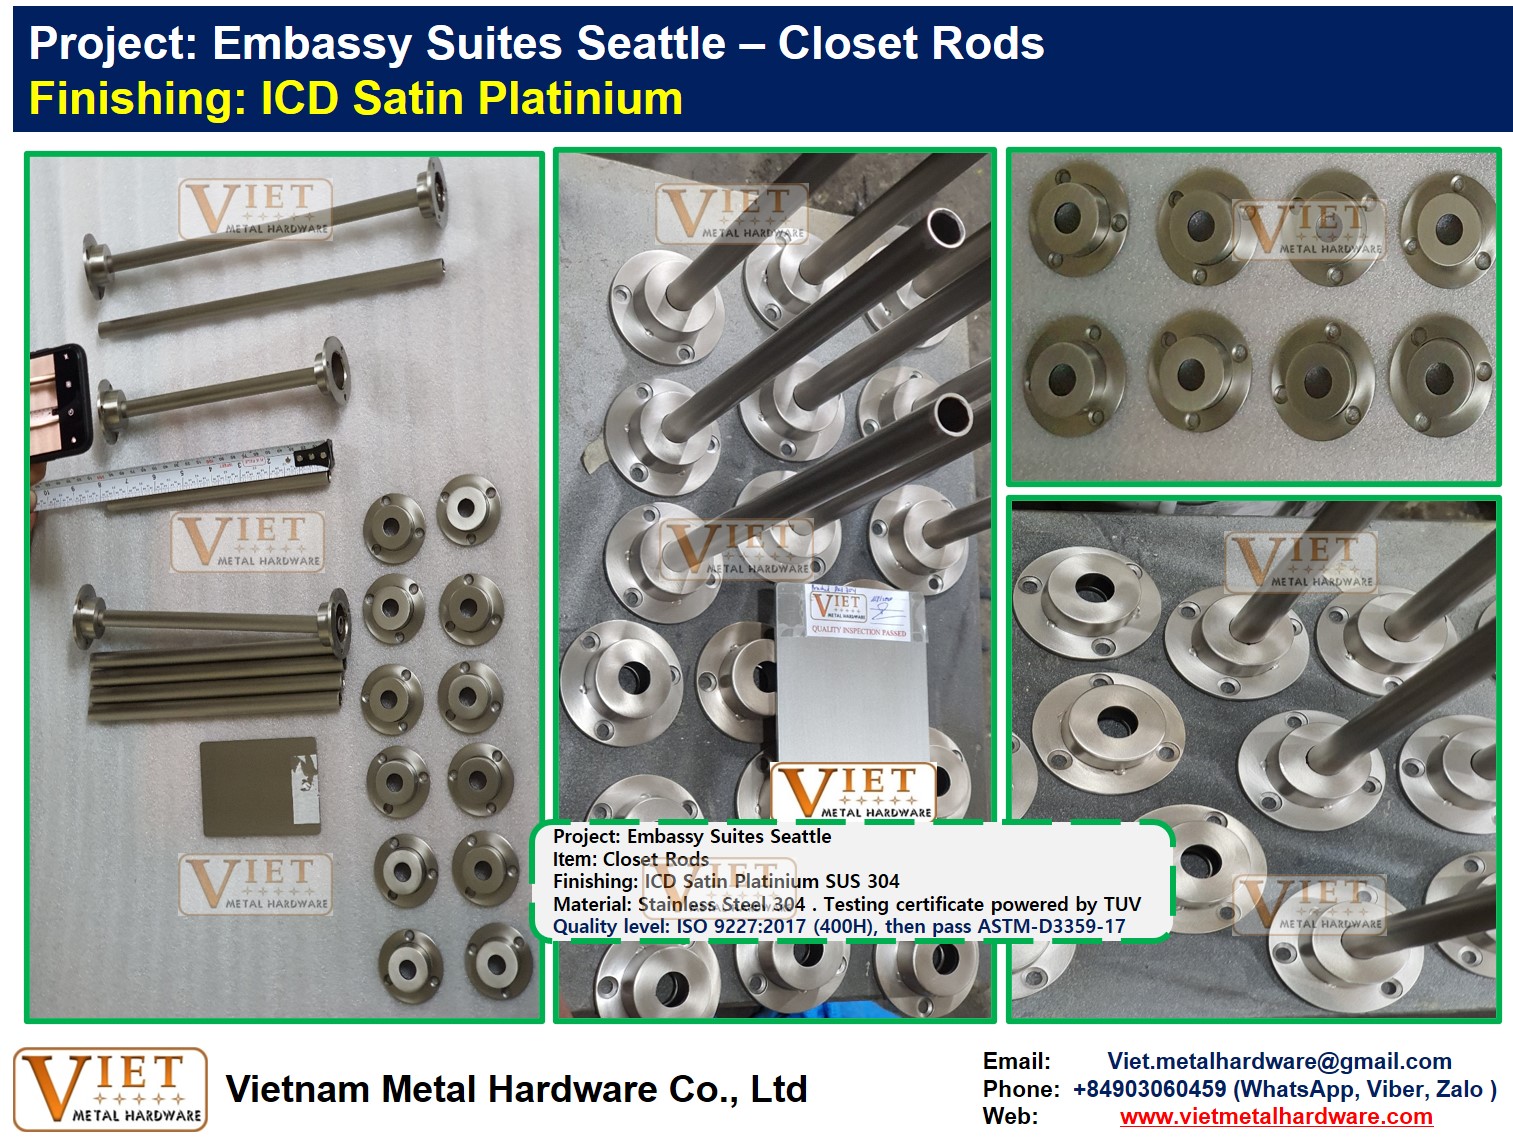 Embassy Suites Seattle - ICD Platinium Closet Rods